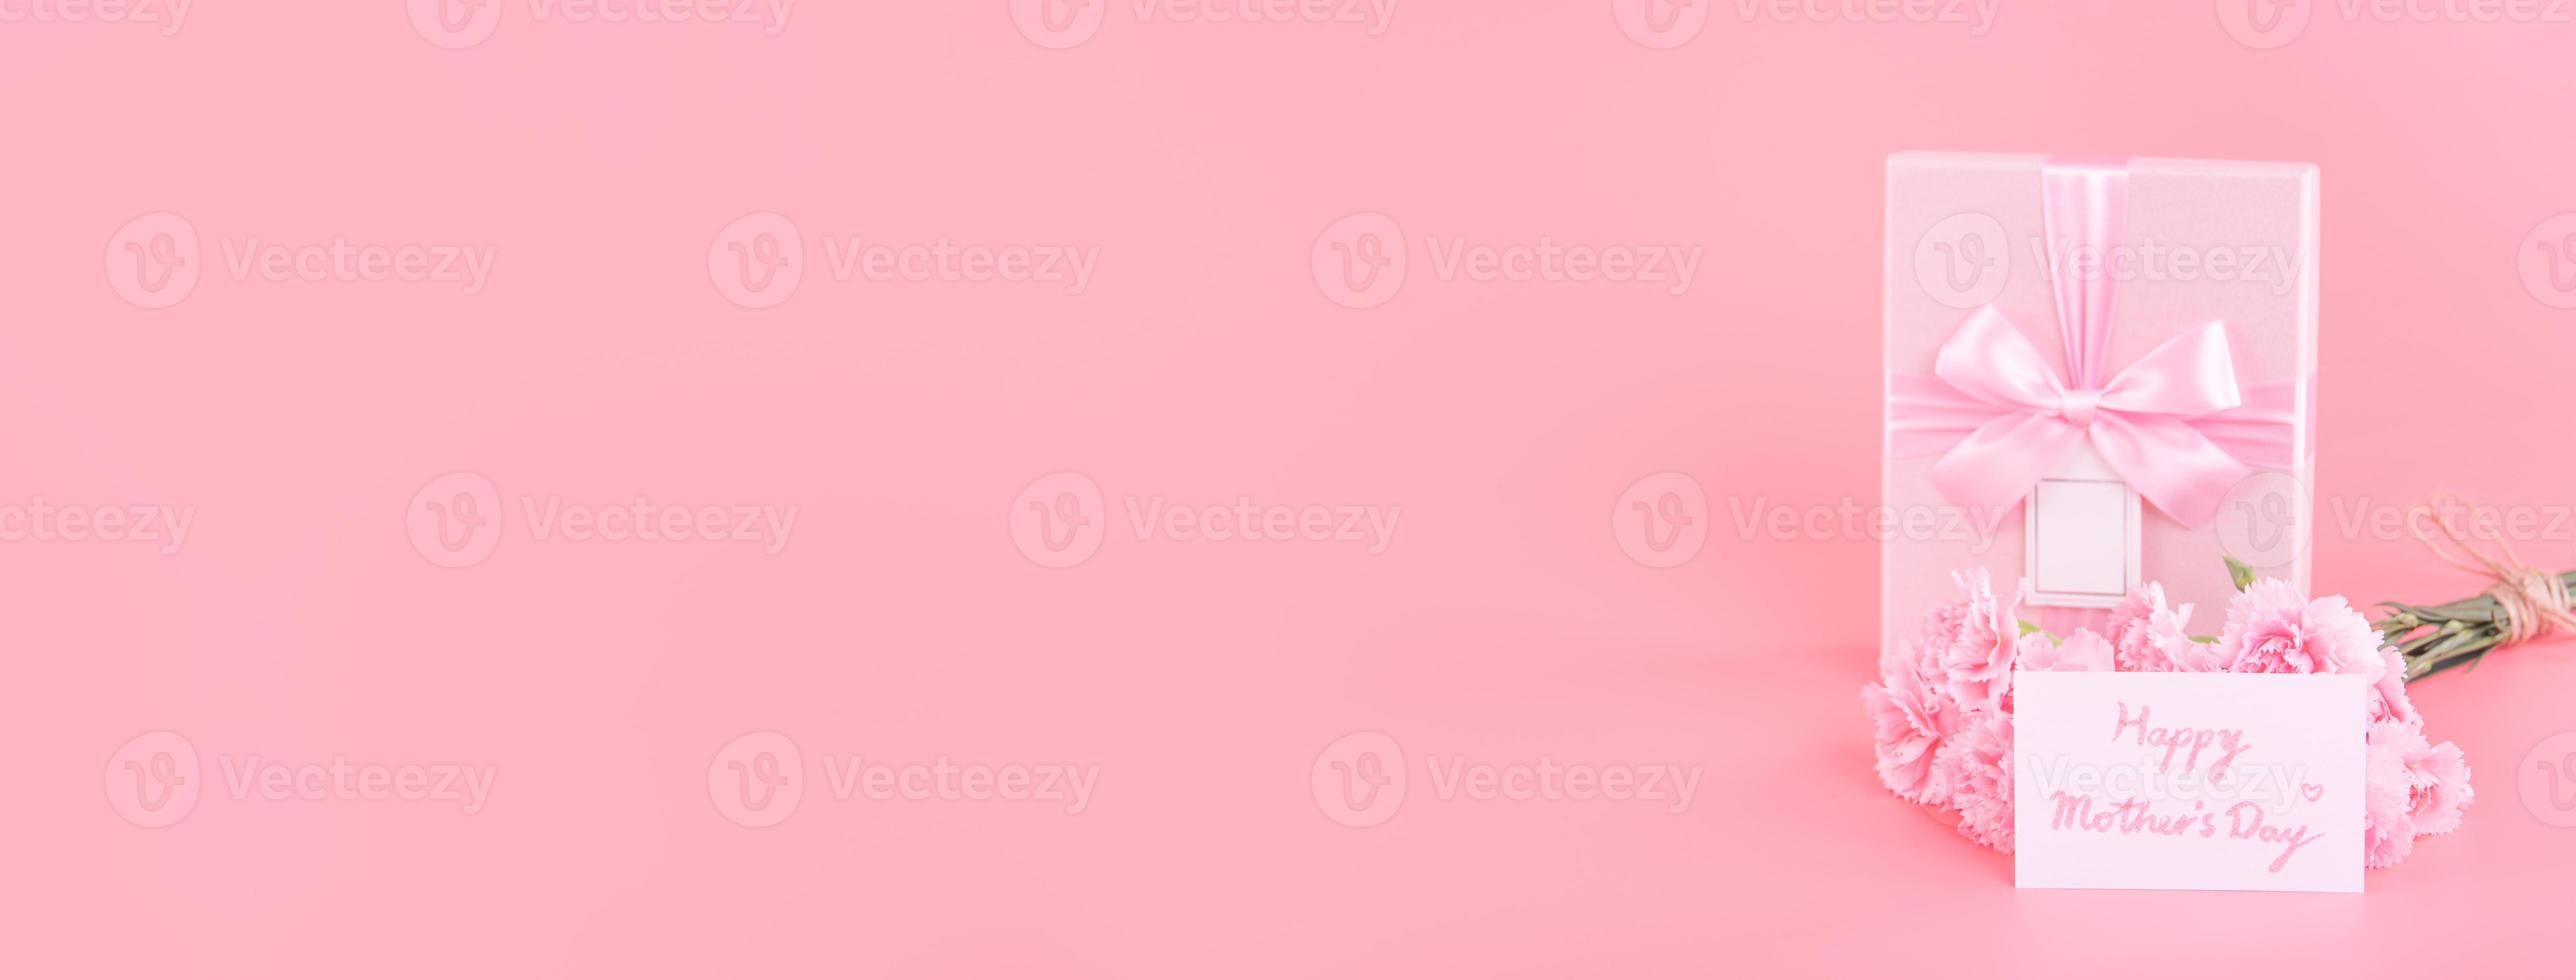 concepto de diseño de regalo de vacaciones del día de la madre, ramo de flores de clavel rosa con tarjeta de felicitación, aislado en fondo rosa claro, espacio de copia. foto